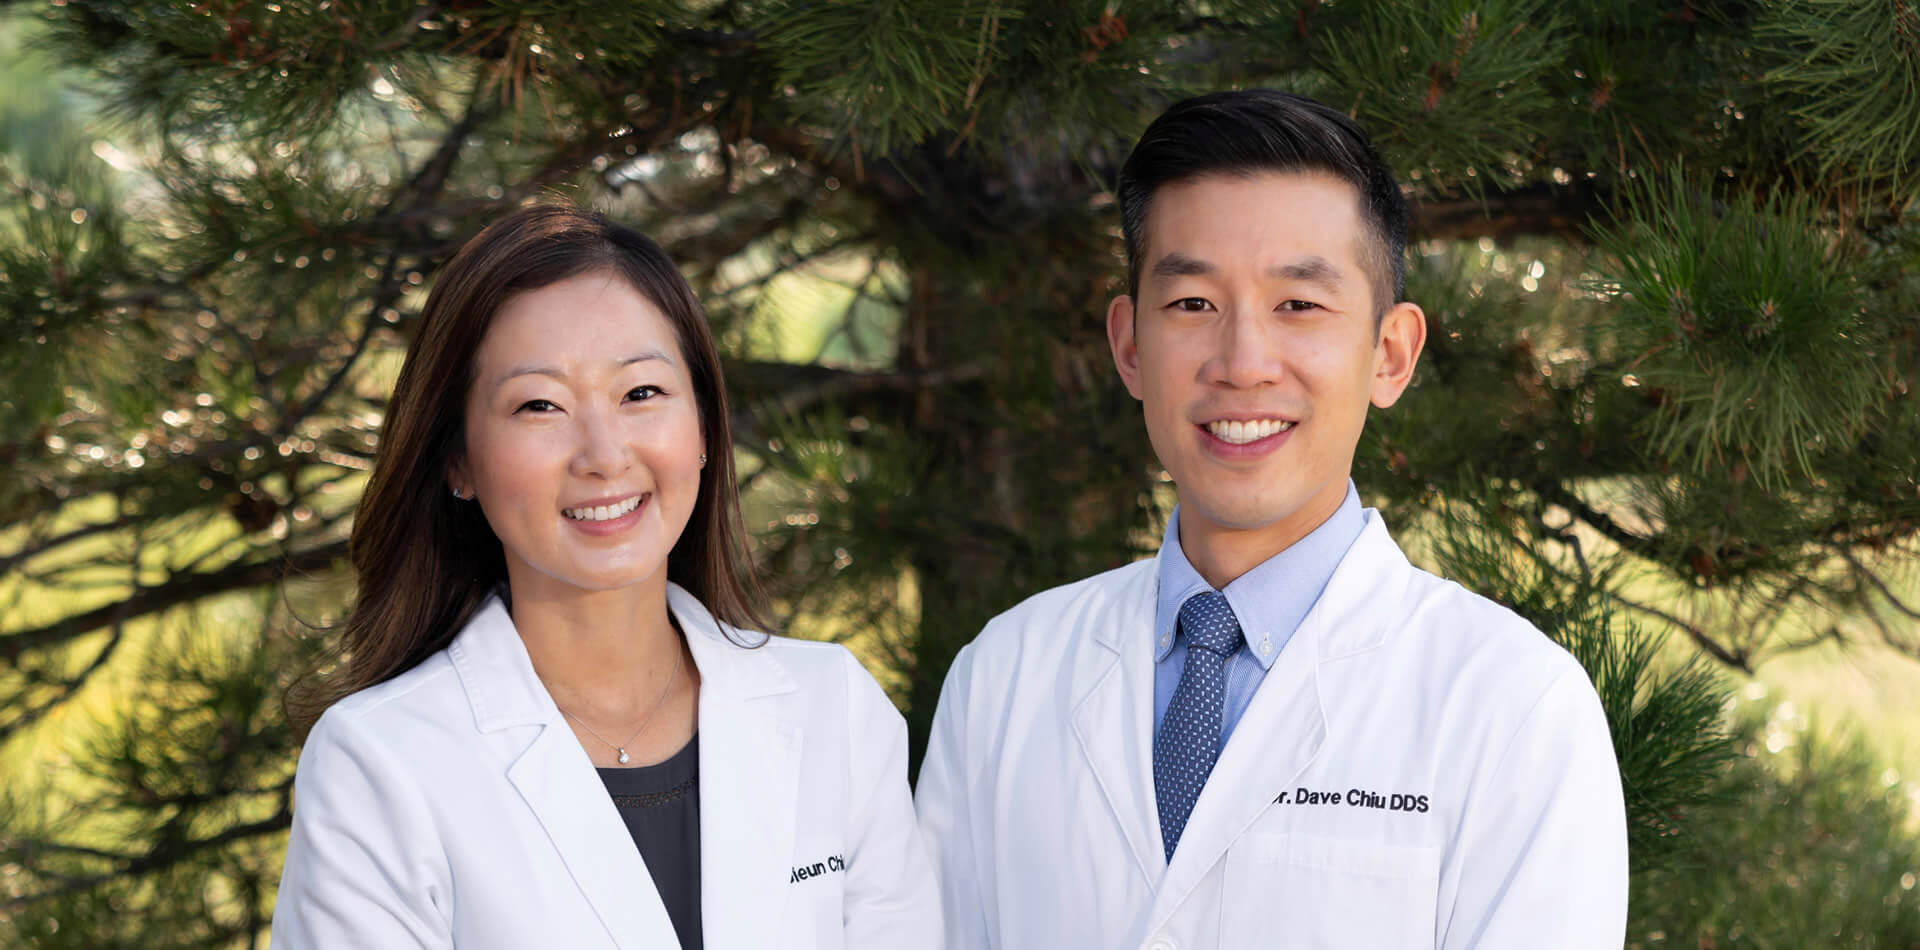 Dr. Dave Chiu and Dr. Jieun Chiu